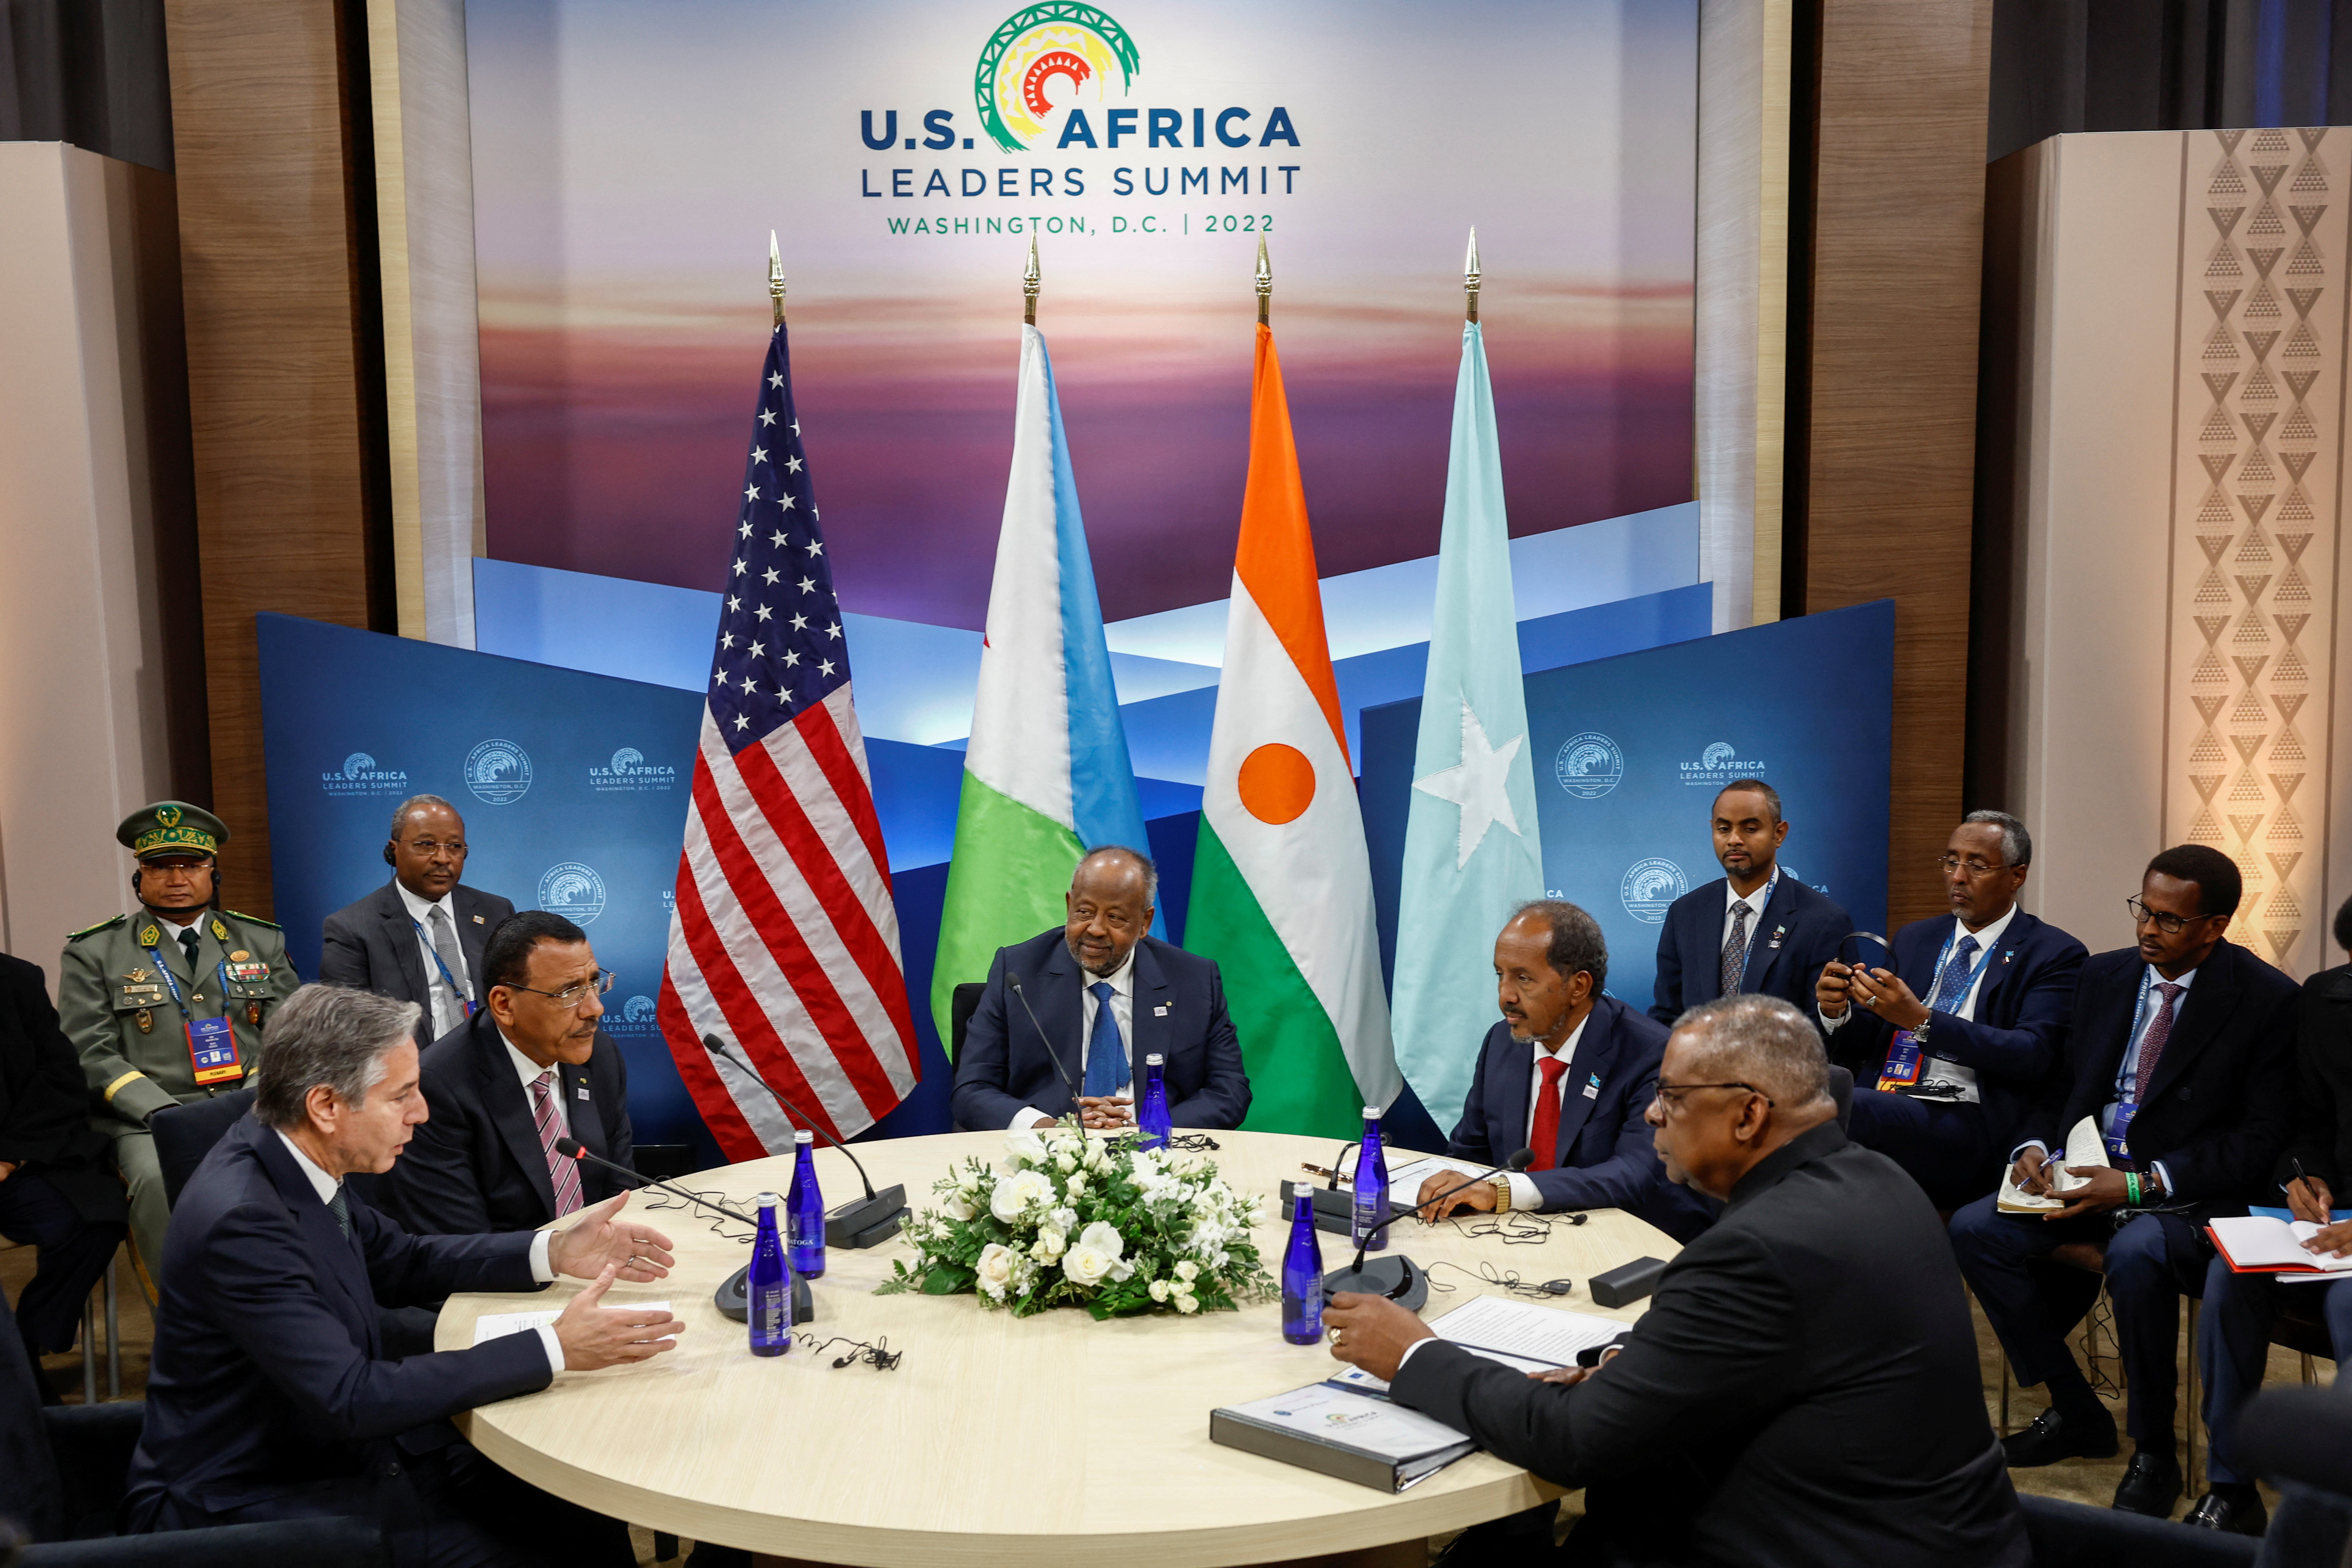 The U.S.-Africa Leaders Summit 2022 is held in Washington